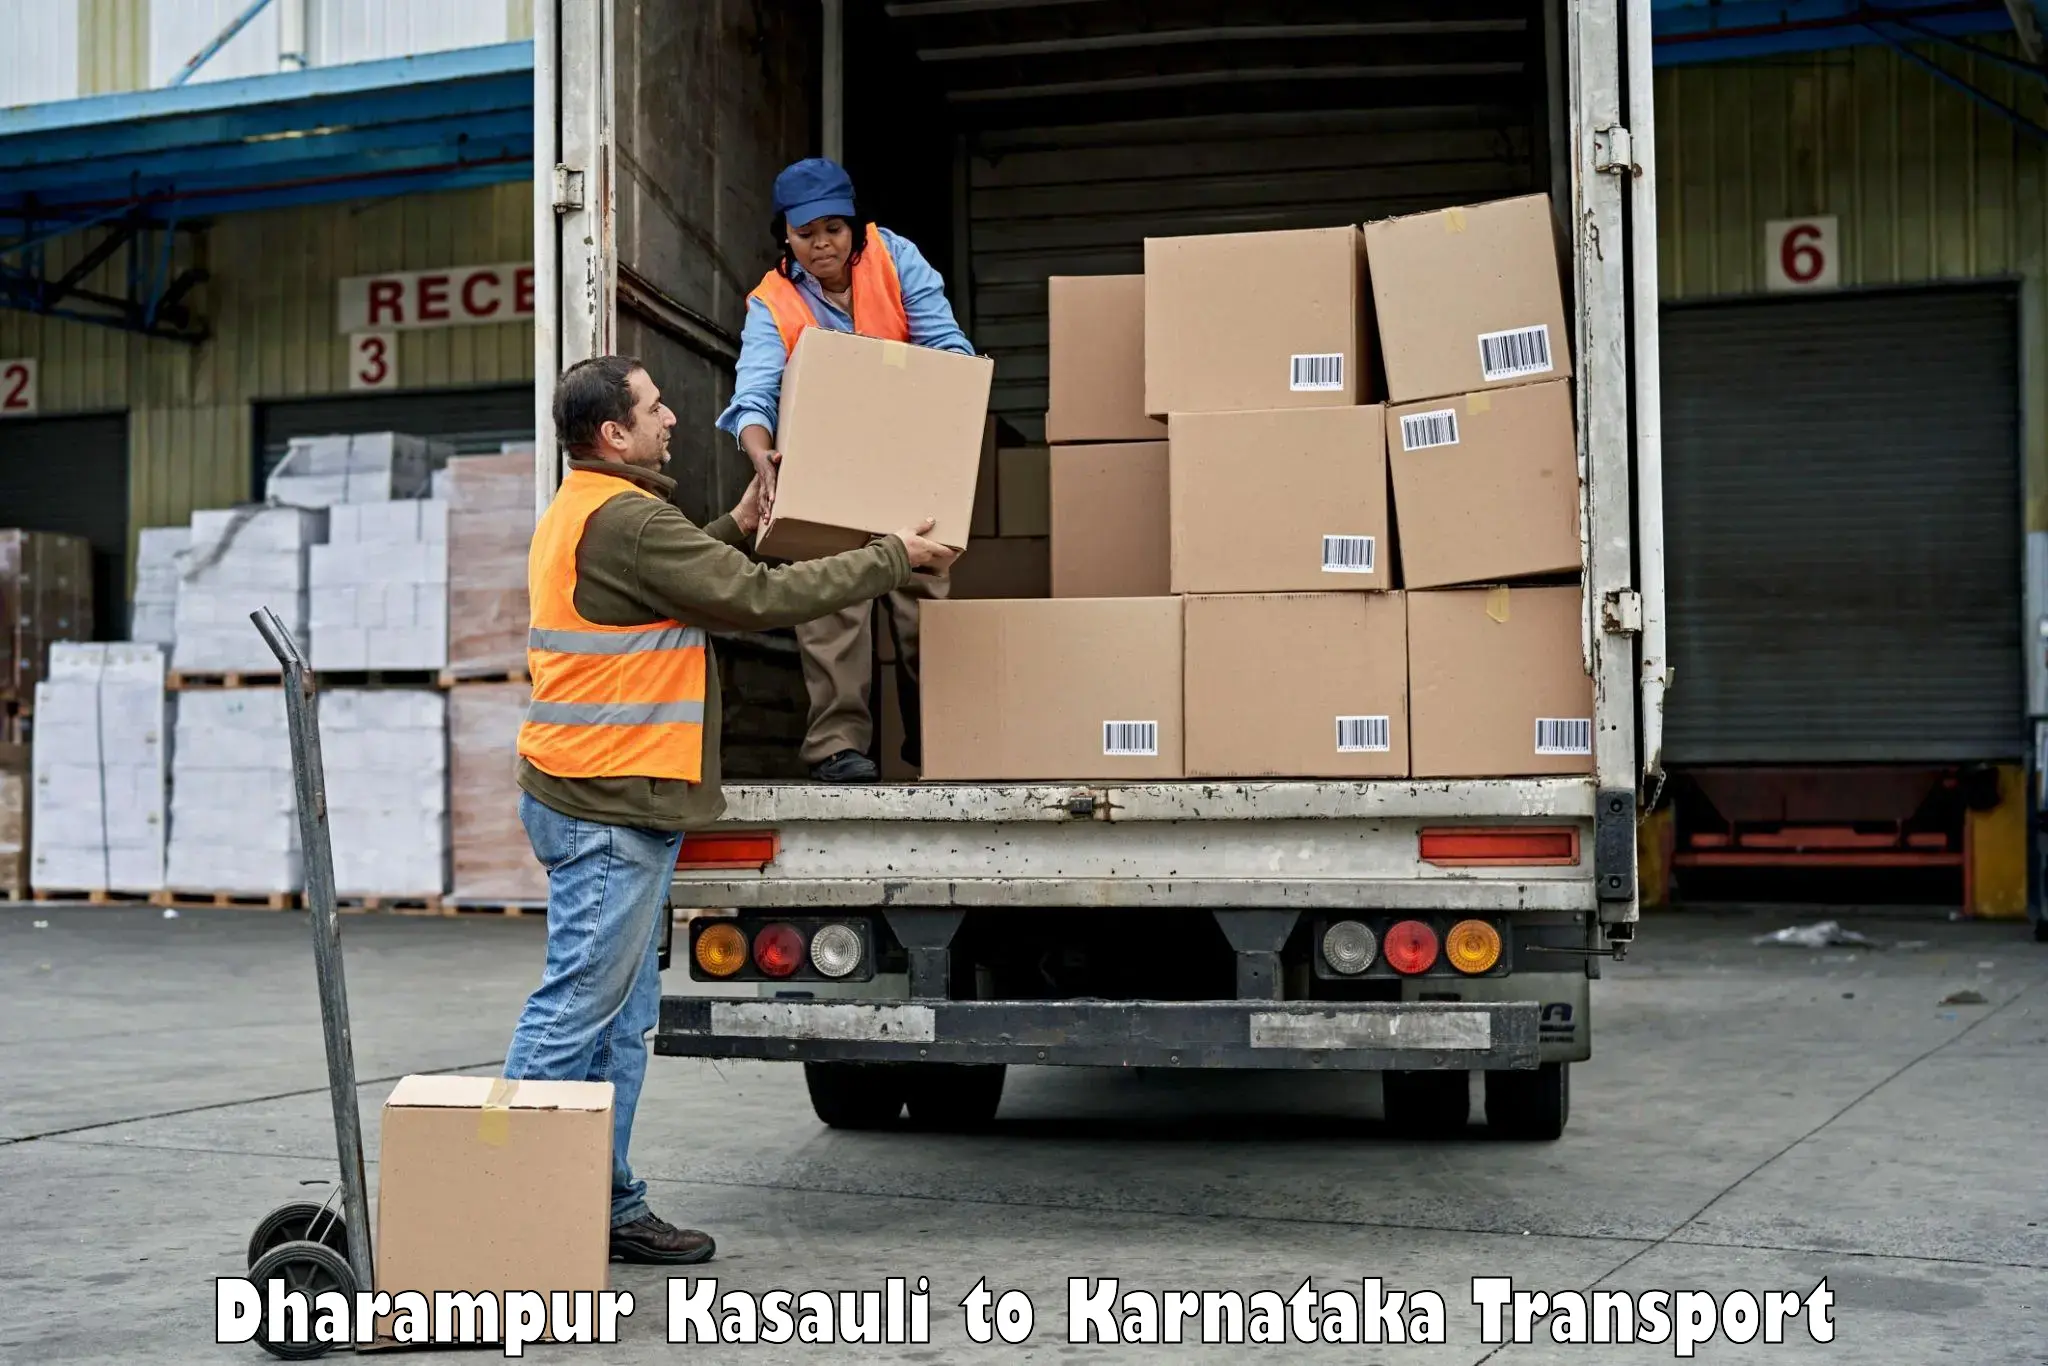 Interstate transport services Dharampur Kasauli to Mundgod